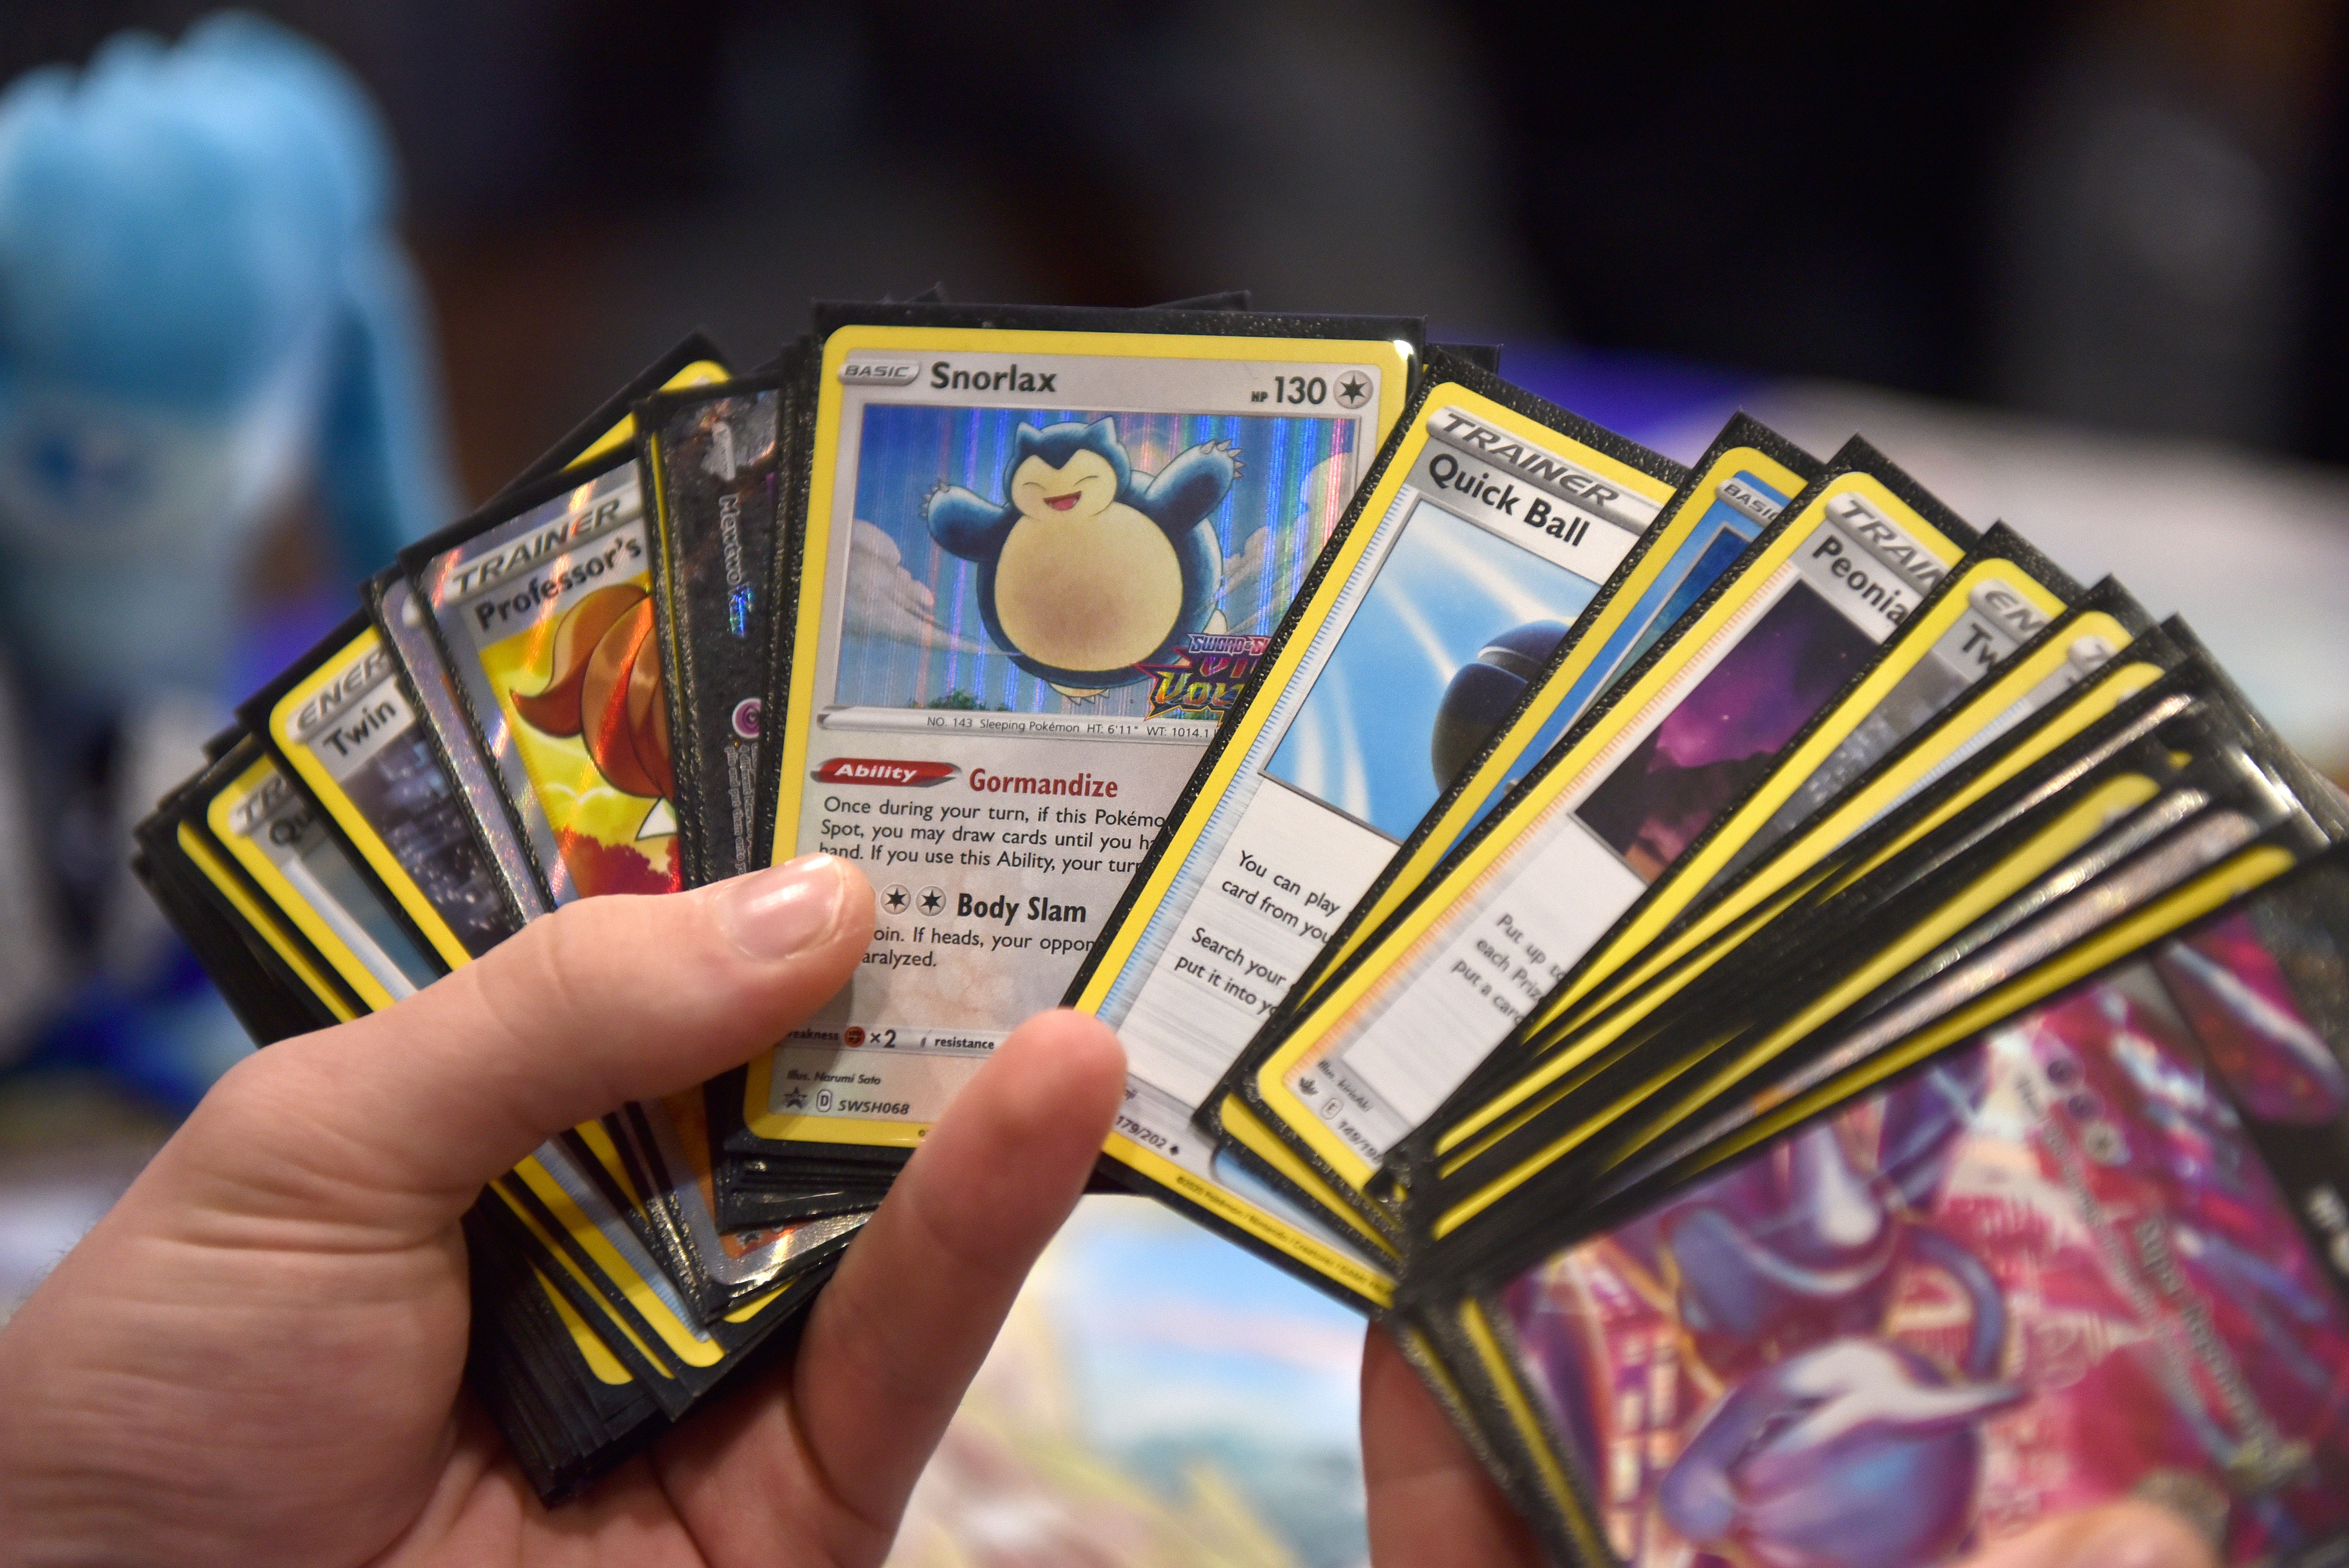 Pokémon-Karten, darunter ein Relaxo, sind ausgebreitet in einer Hand zu sehen.